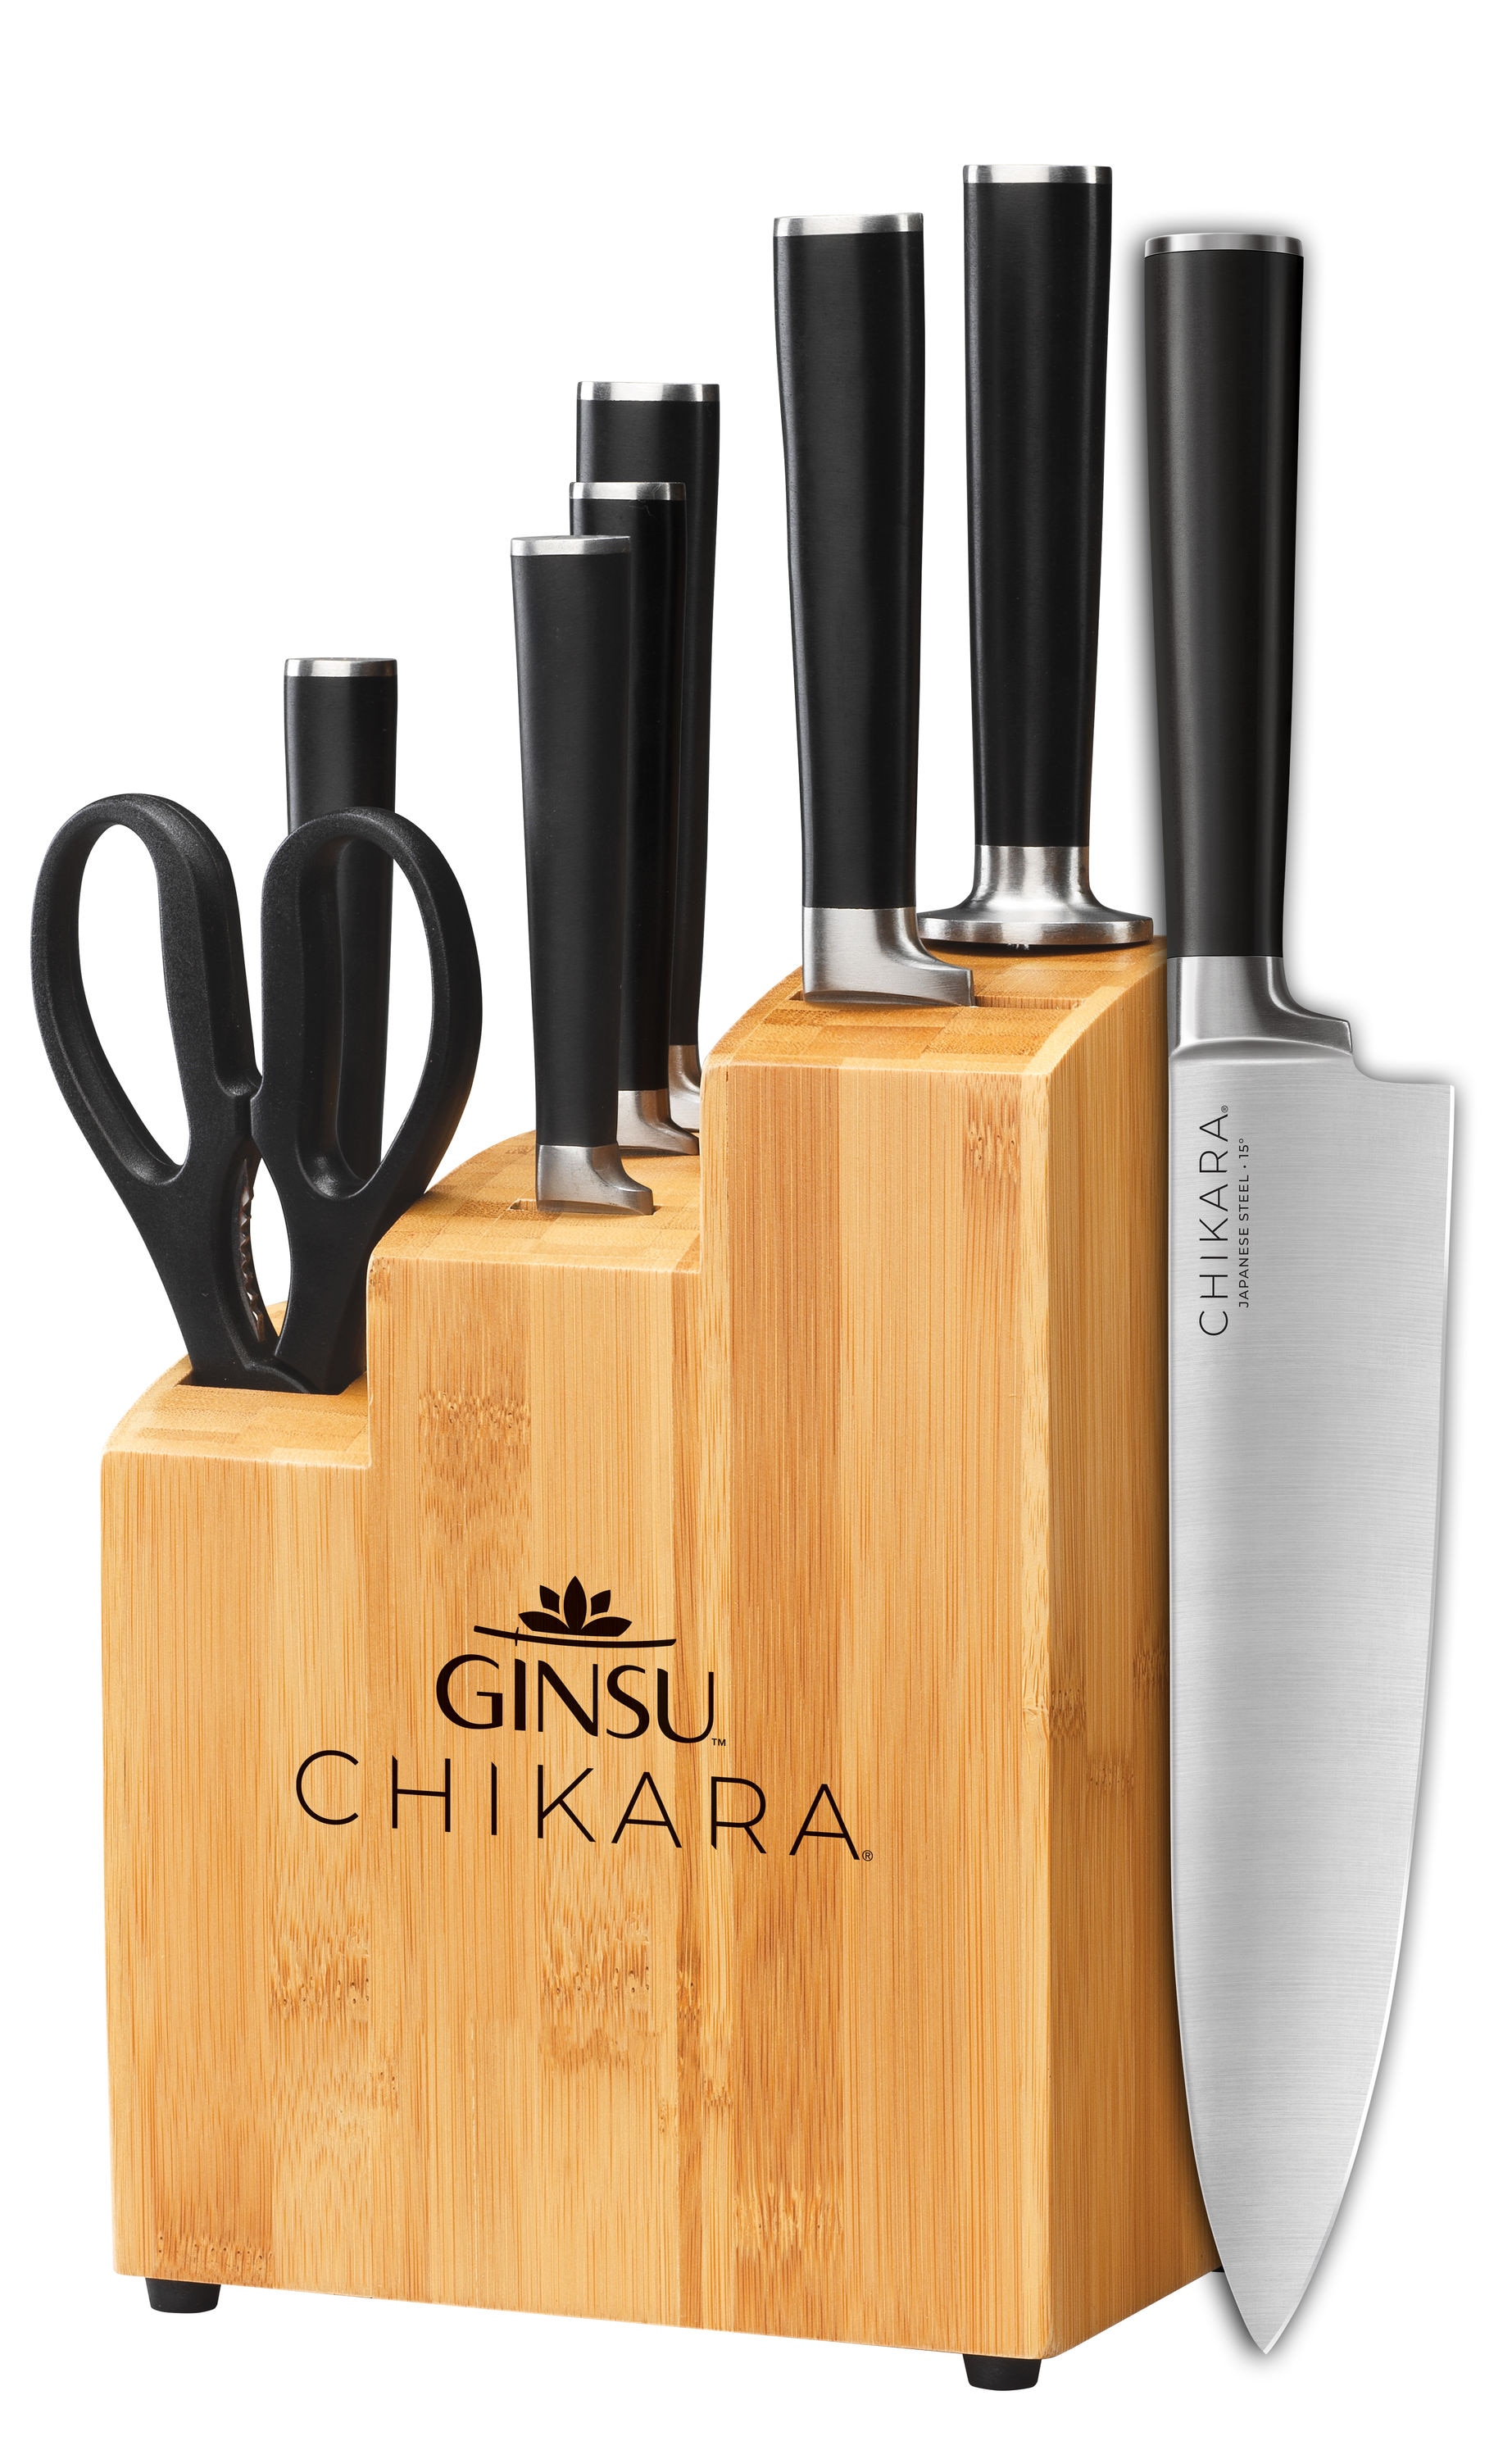 Ginsu Chikara 8 Piece Knife Set with Bamboo Block - Premium